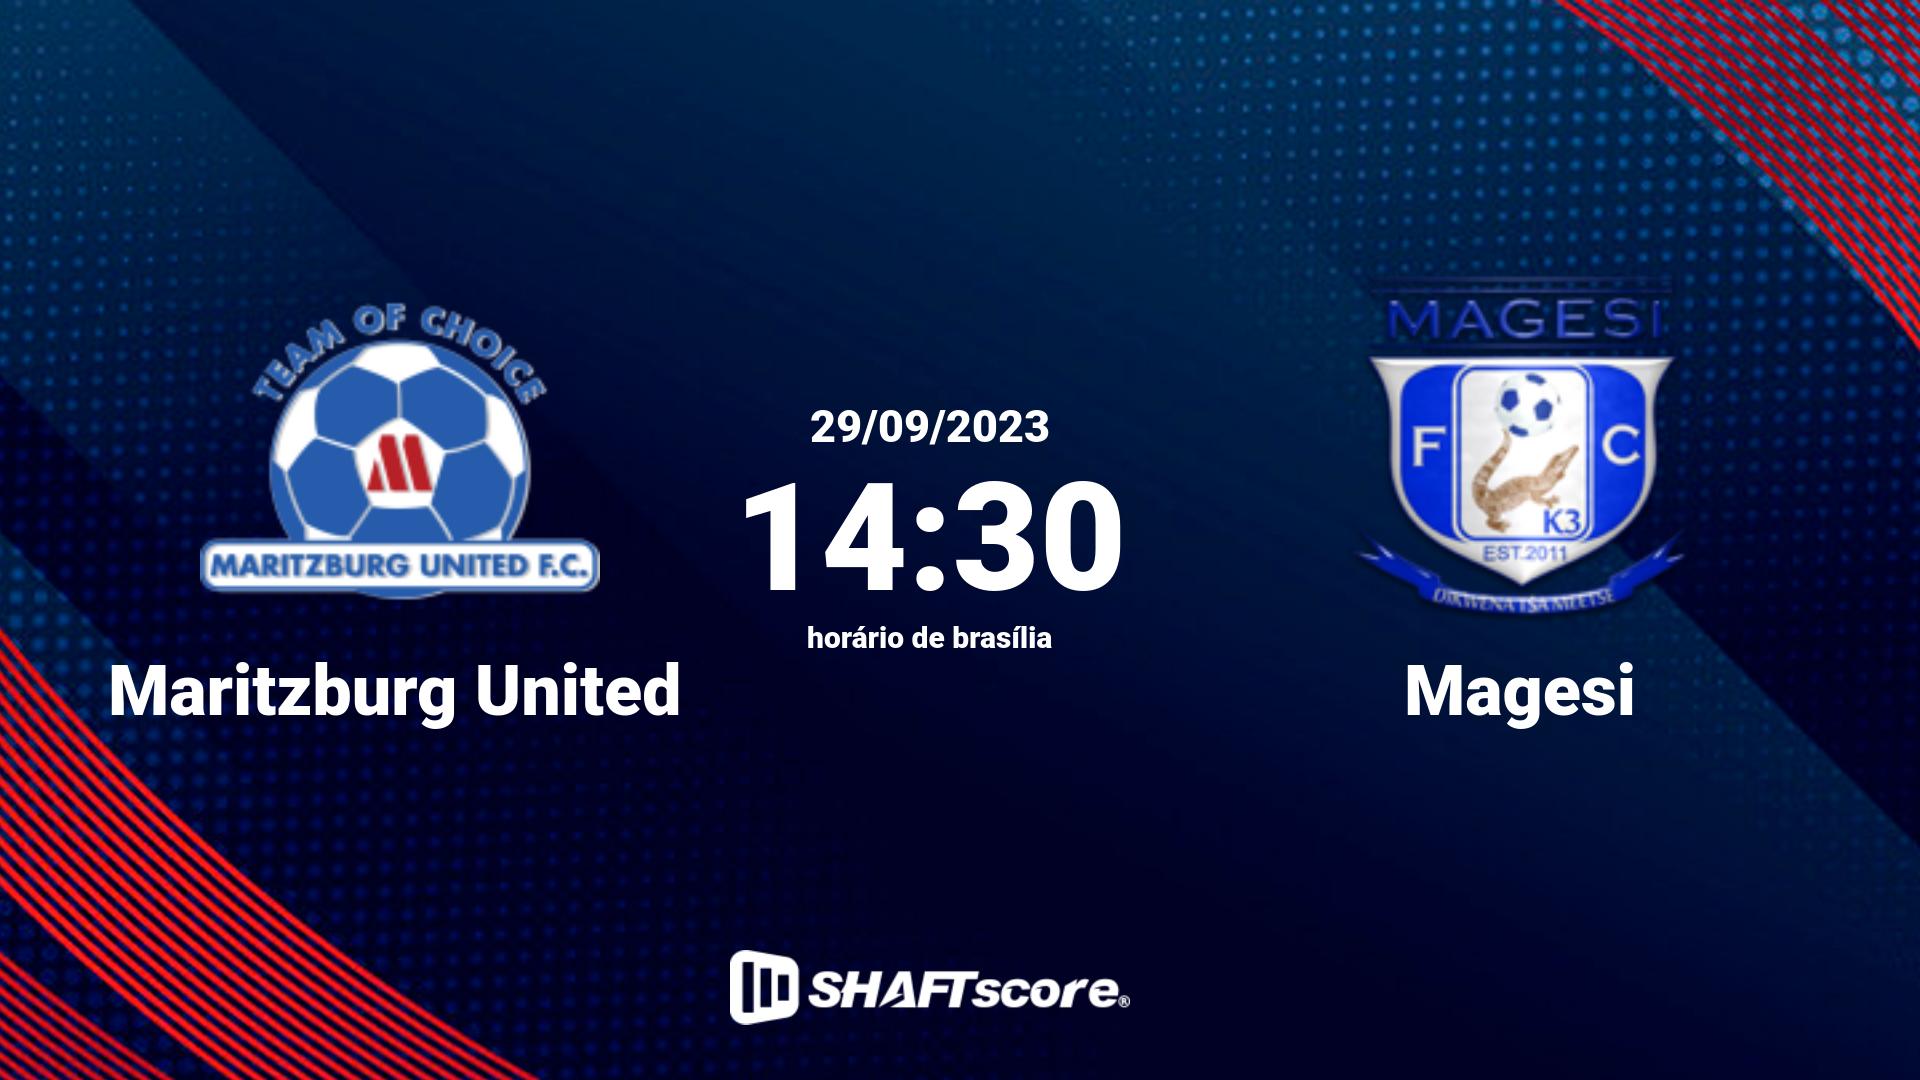 Estatísticas do jogo Maritzburg United vs Magesi 29.09 14:30